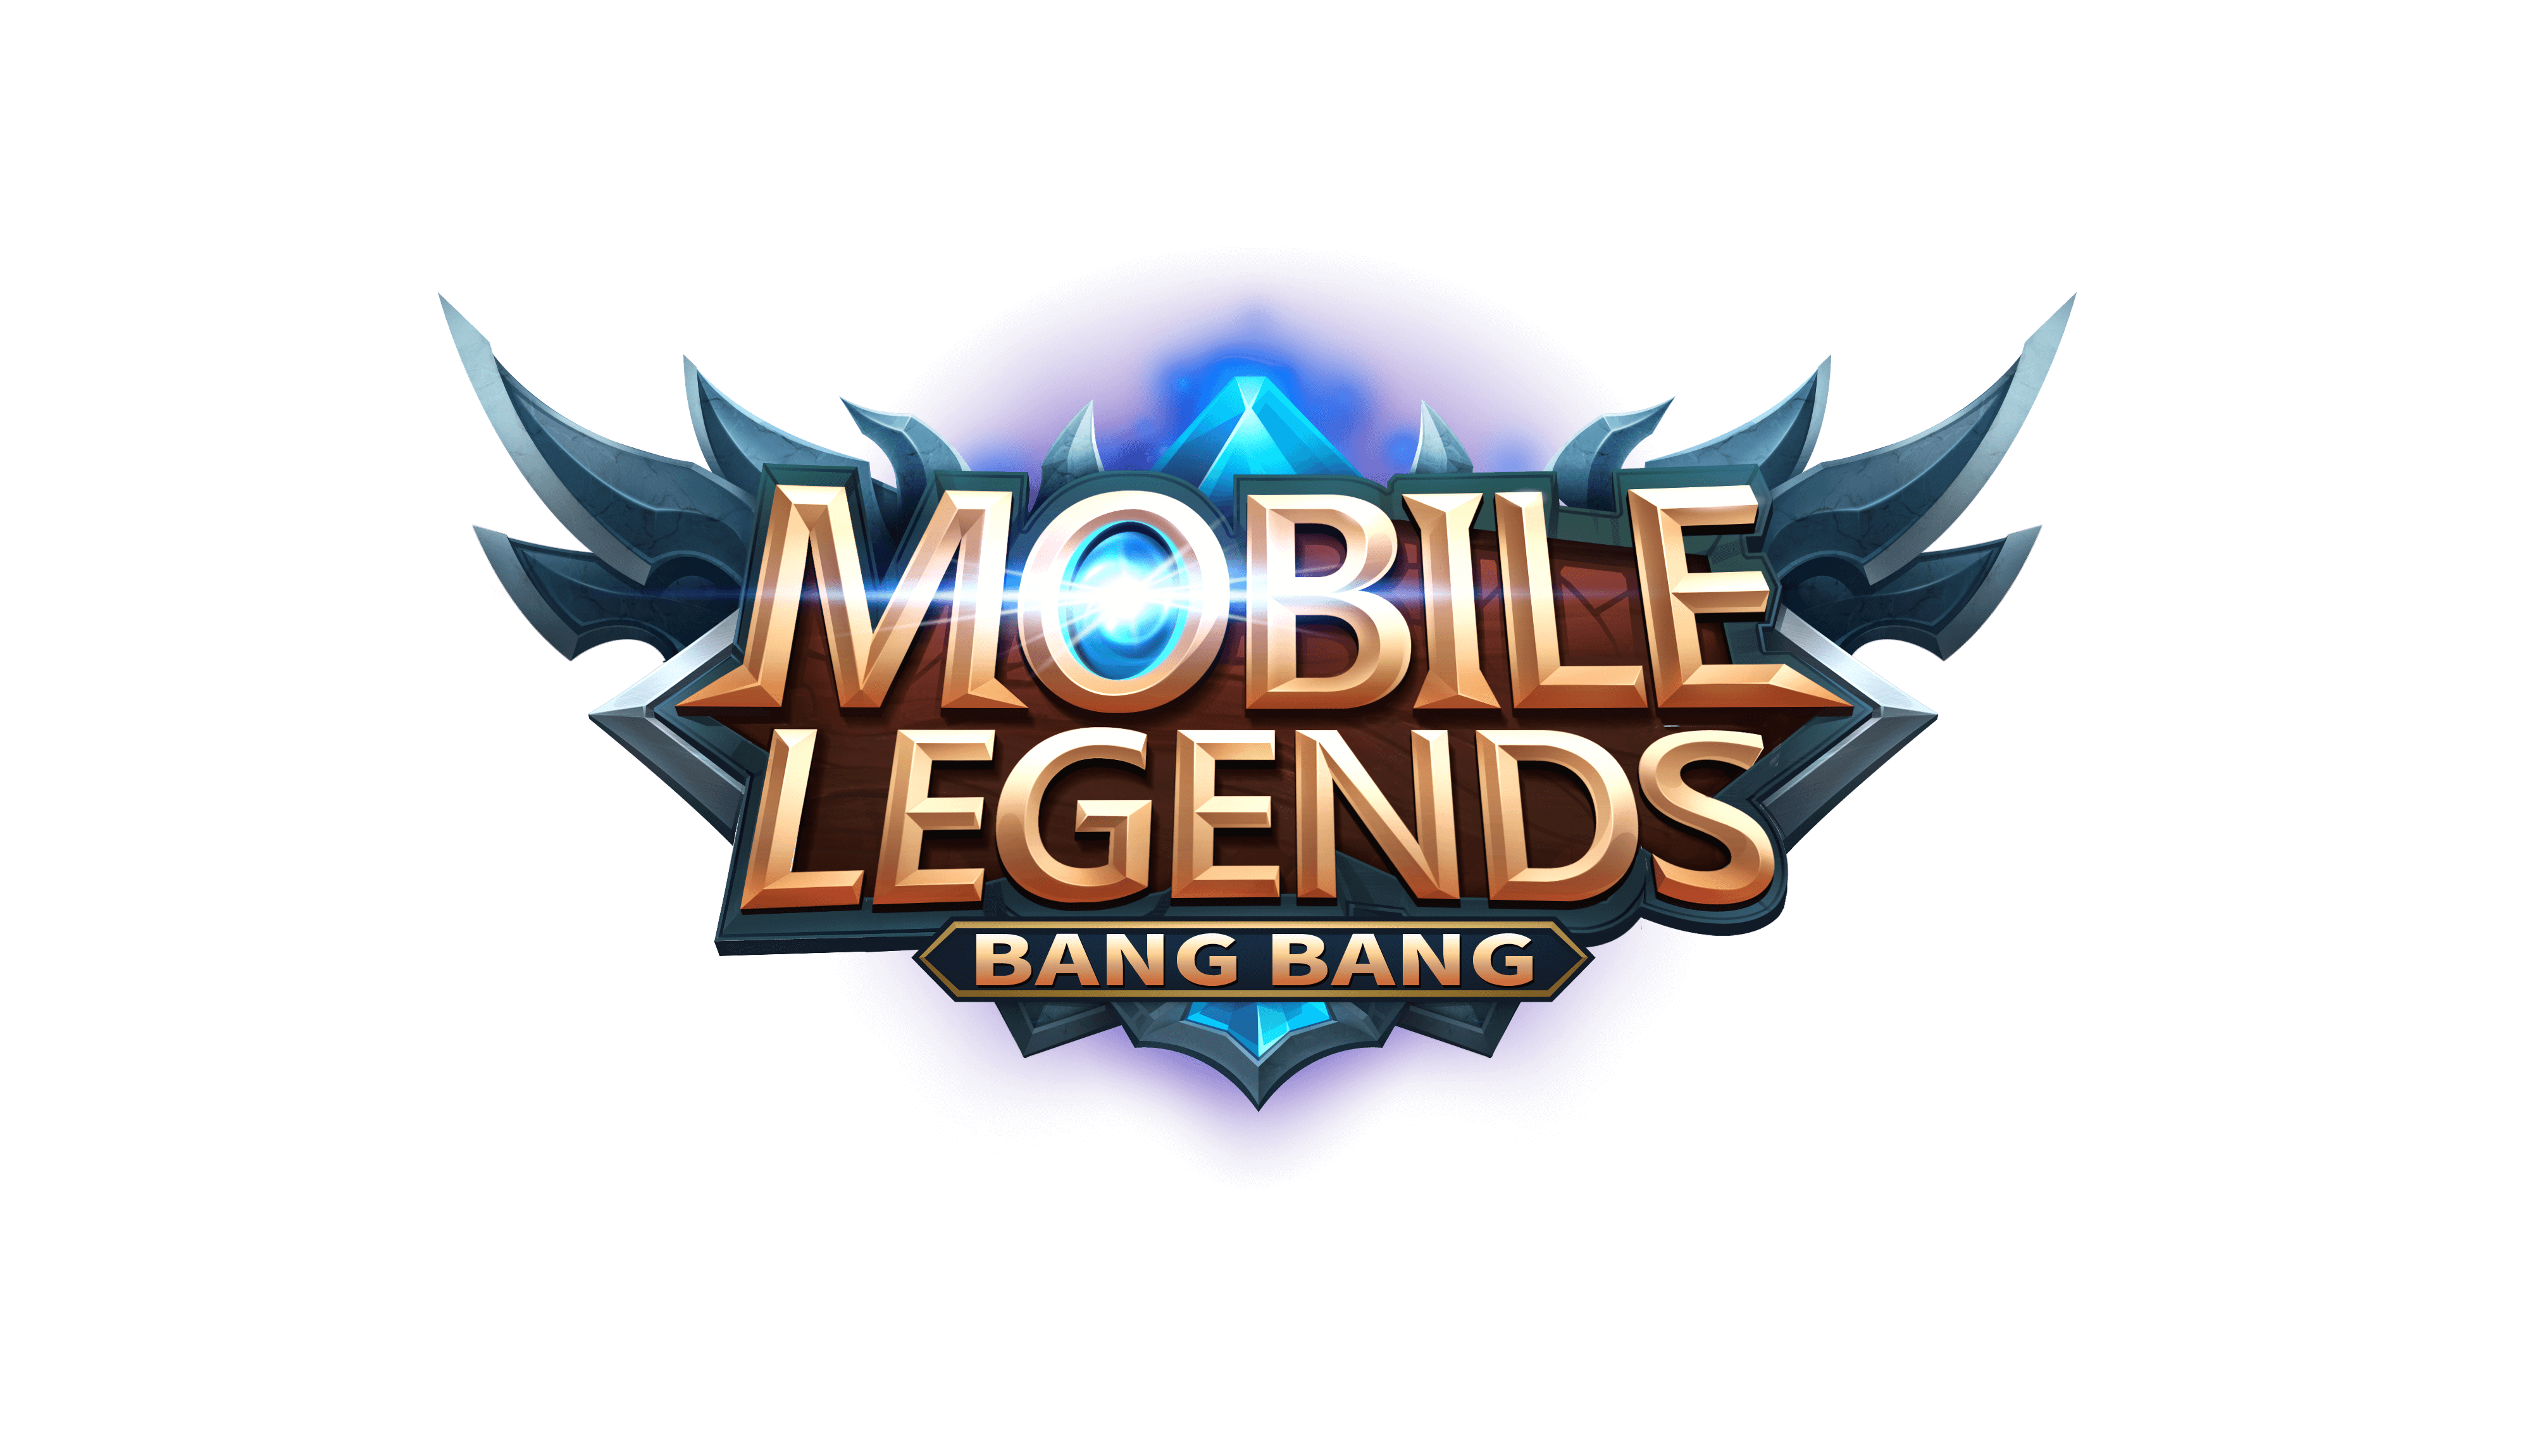 Mobile Legend Logo Png Free Download Mobile Legends Images Free Transparent Png Logos